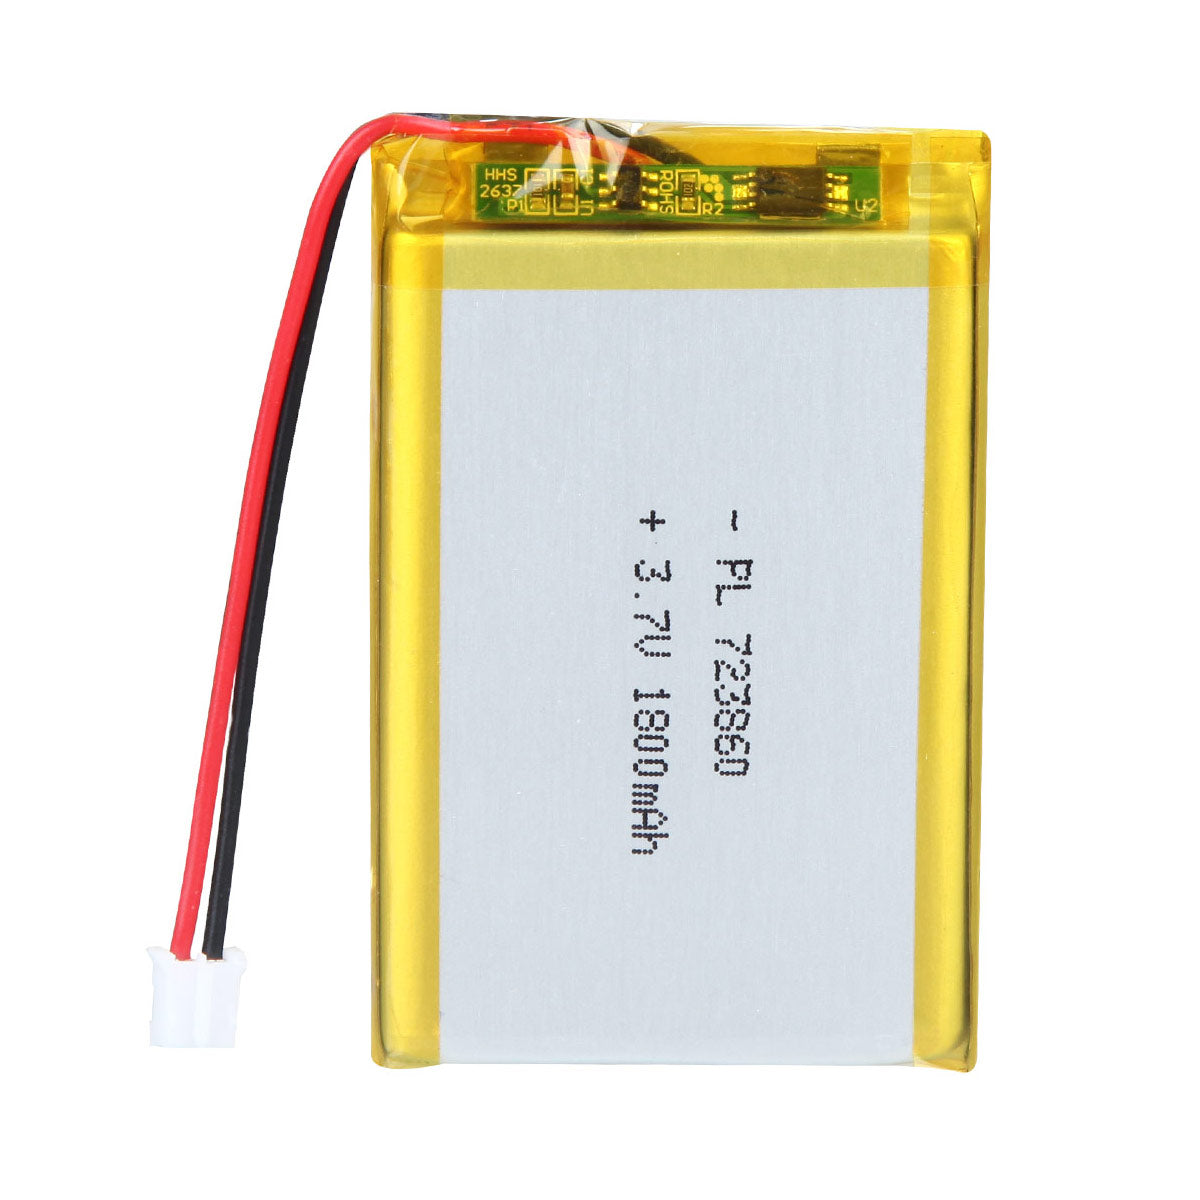 Batterie Lithium-Ion Polymère Rechargeable 3.7V 1800mAh 723860 Longueur 62mm